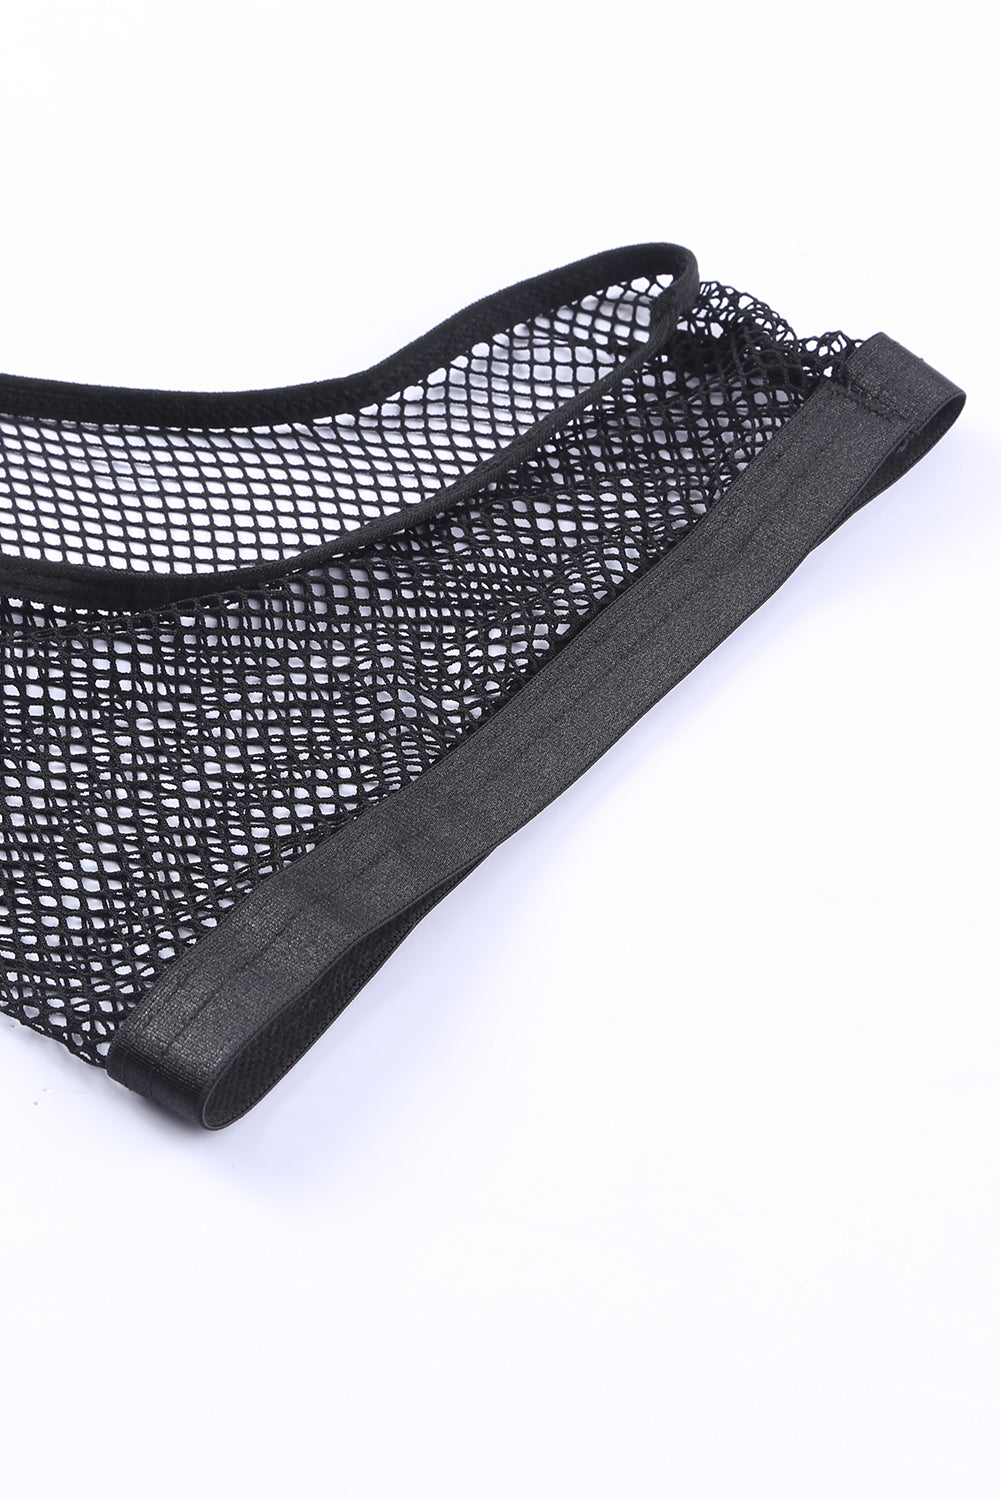 Black Halter Backless Fishnet Lingerie Set With Shorts